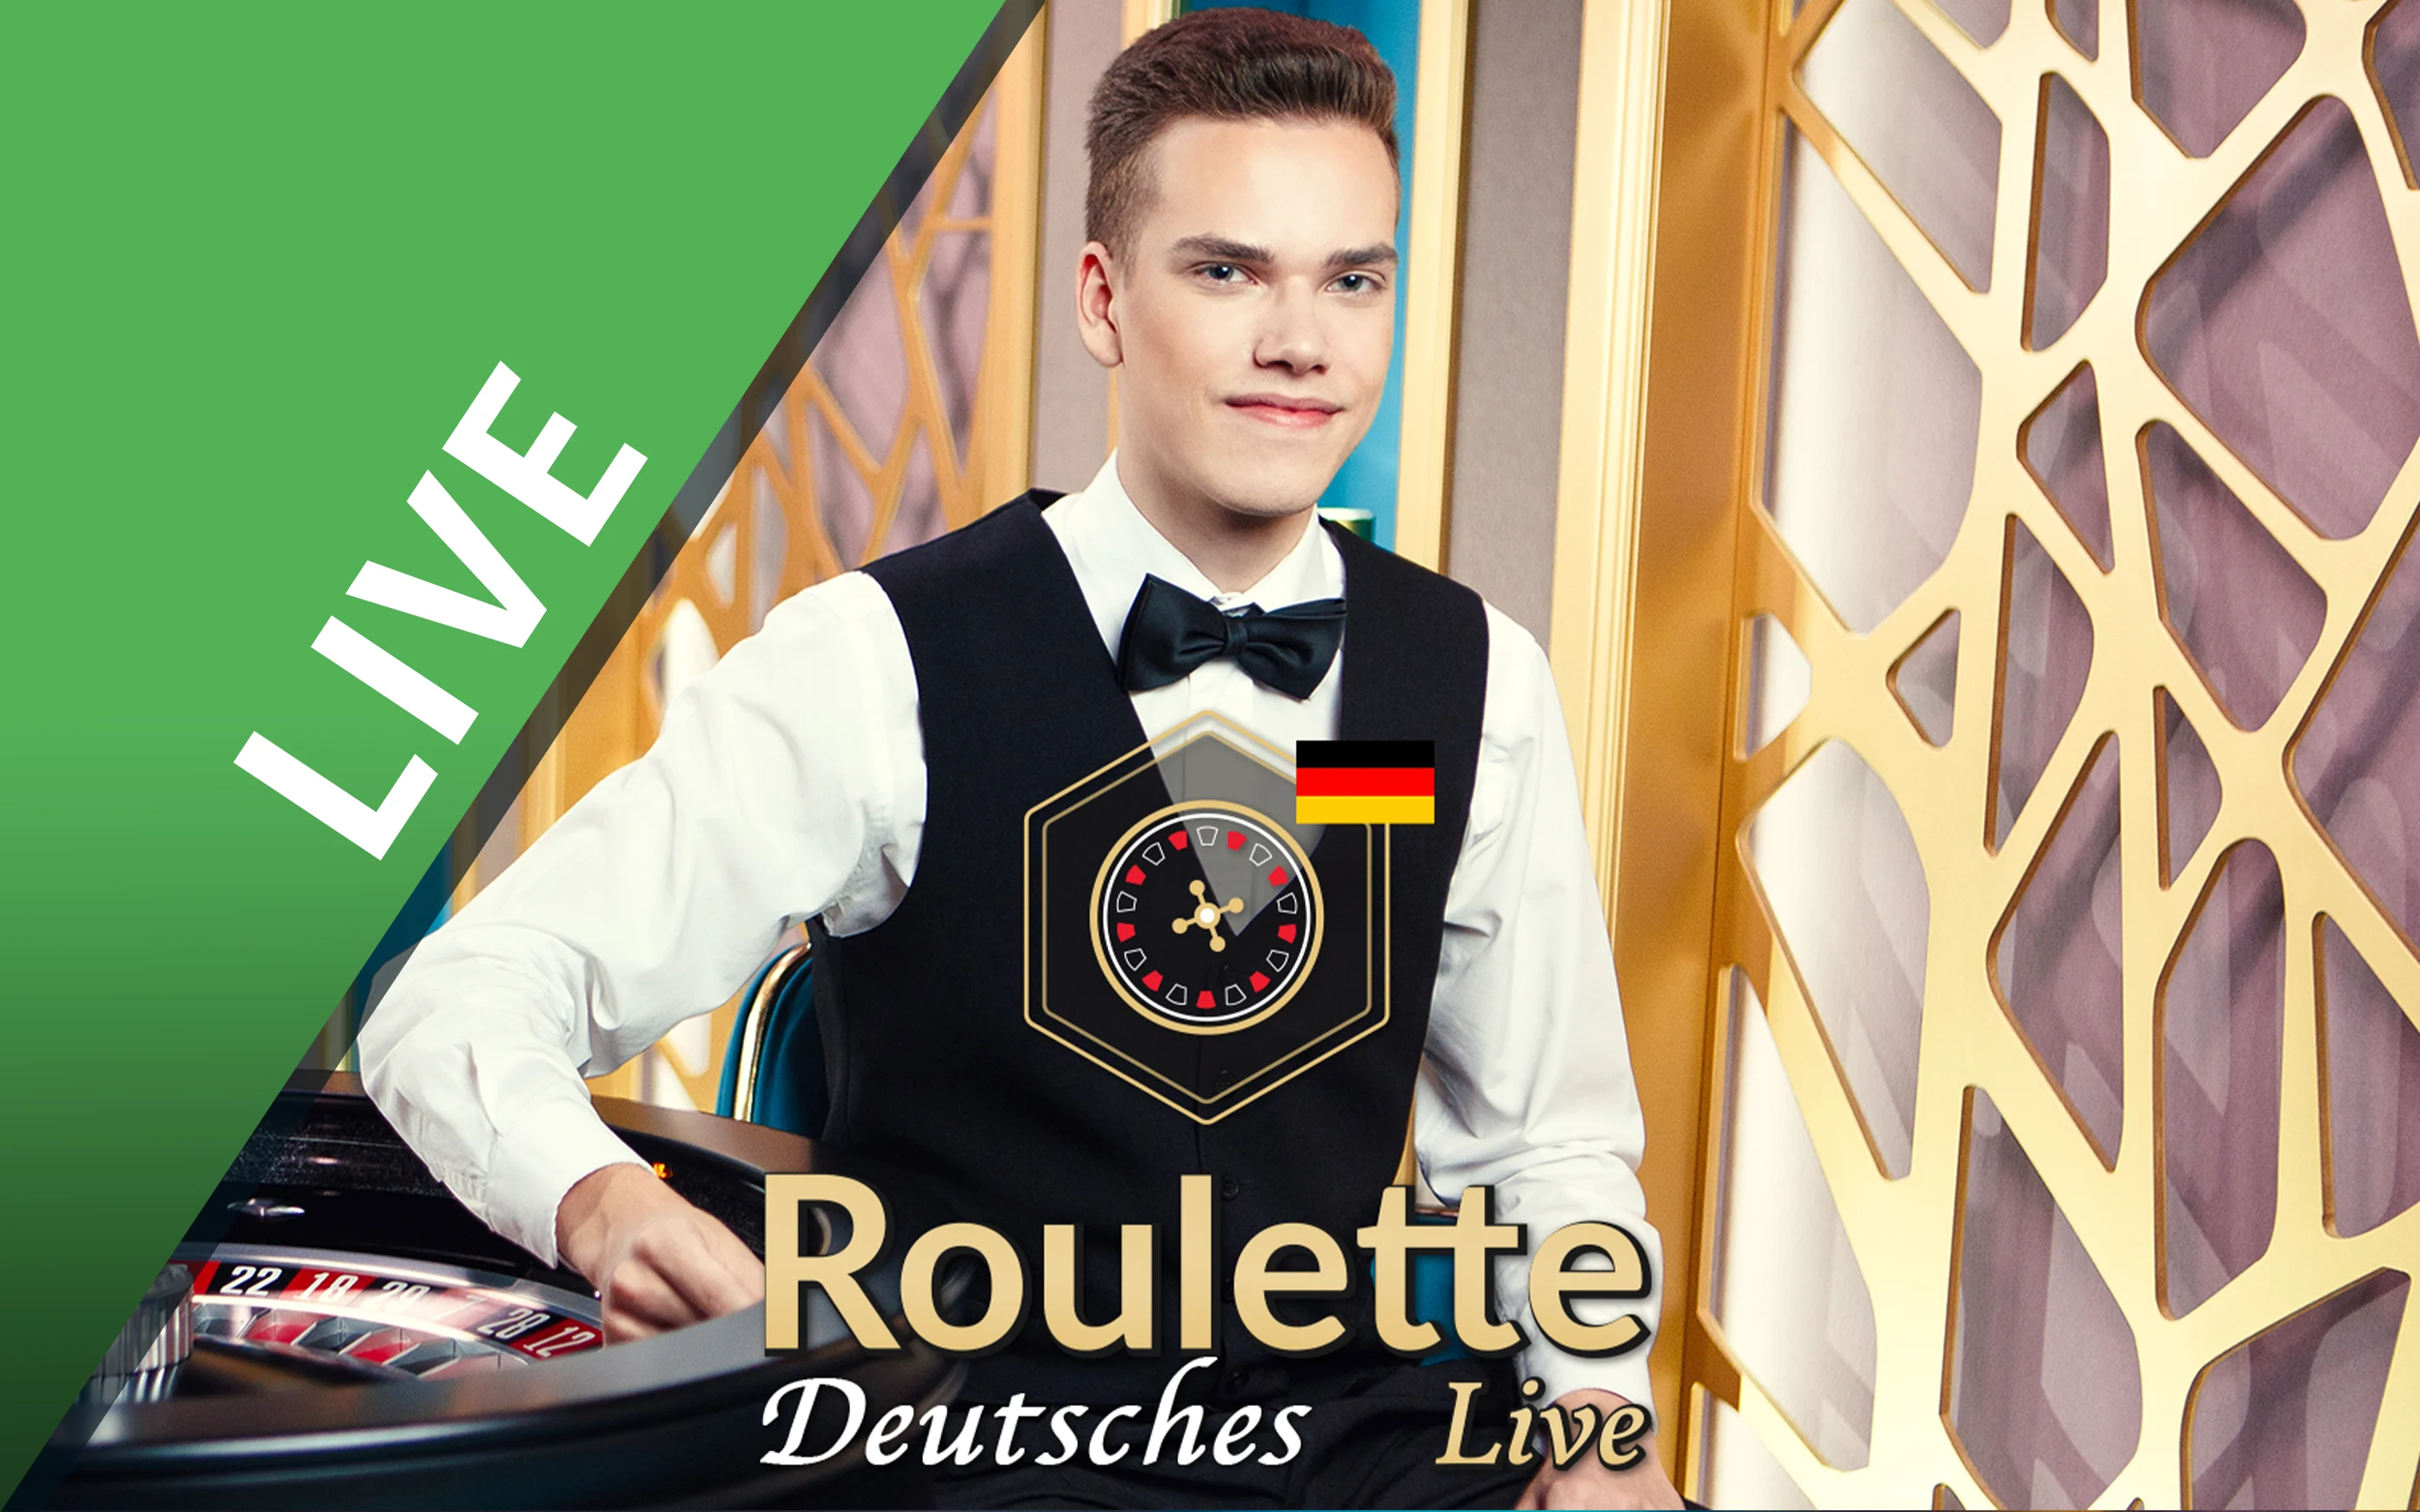 Starcasino.be online casino üzerinden Deutsches Roulette oynayın